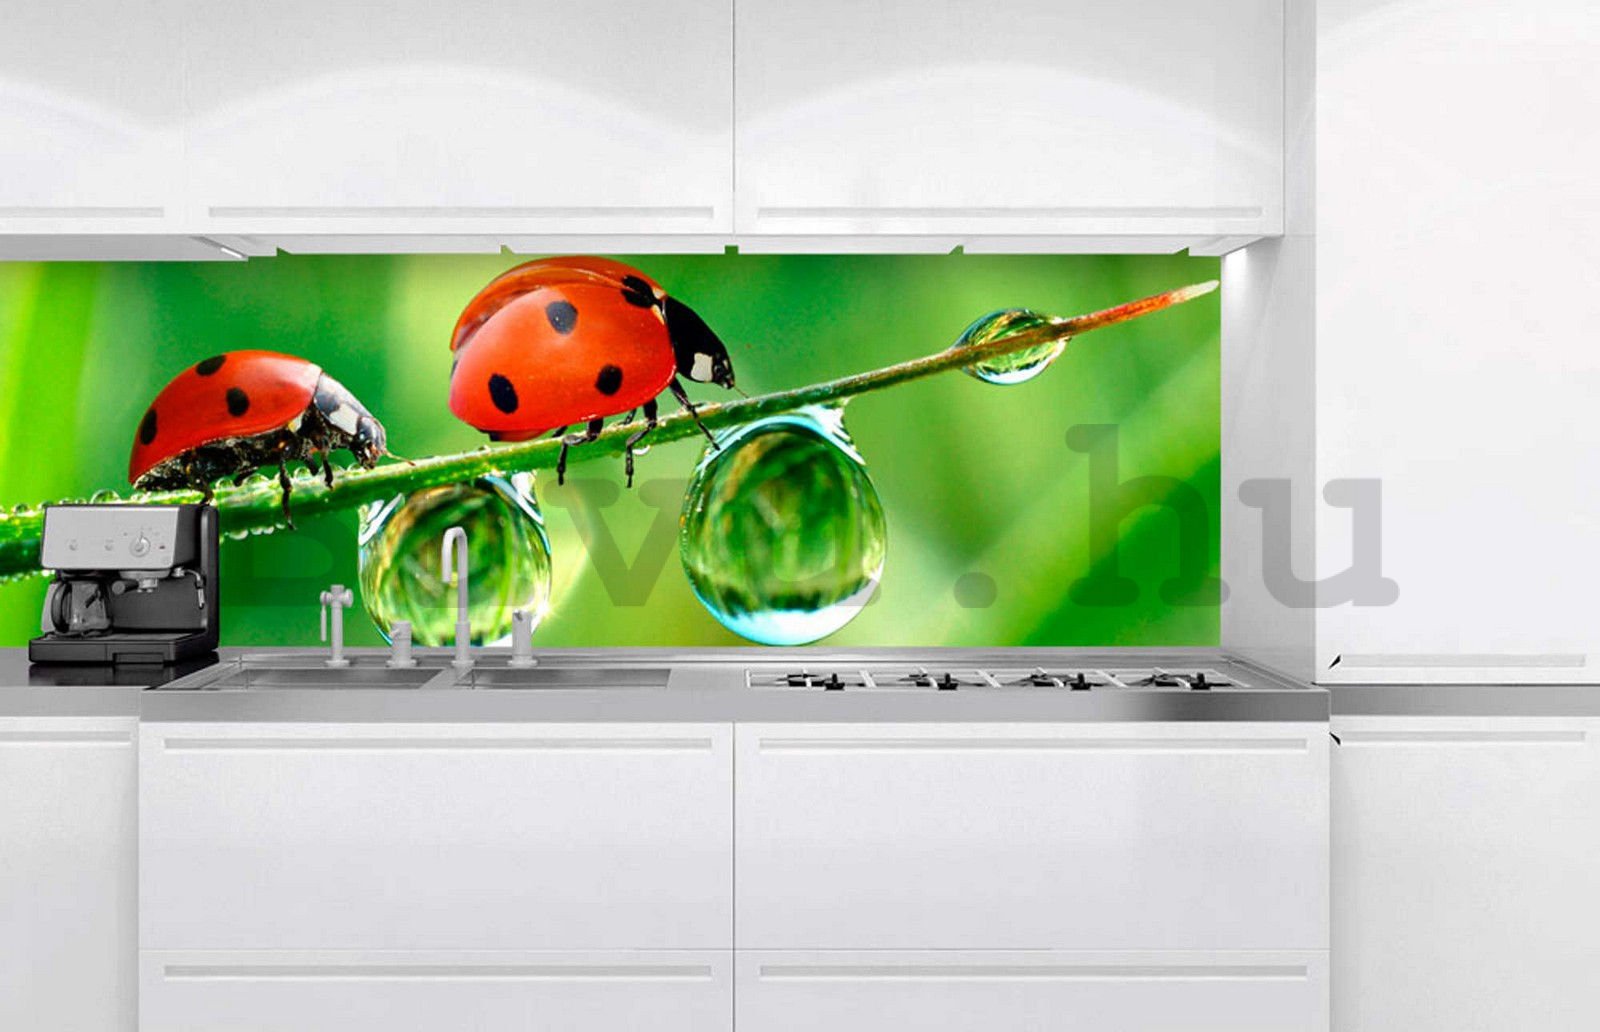 Öntapadós mosható fotófotótapéta konyhába - Katicabogarak, 180x60 cm